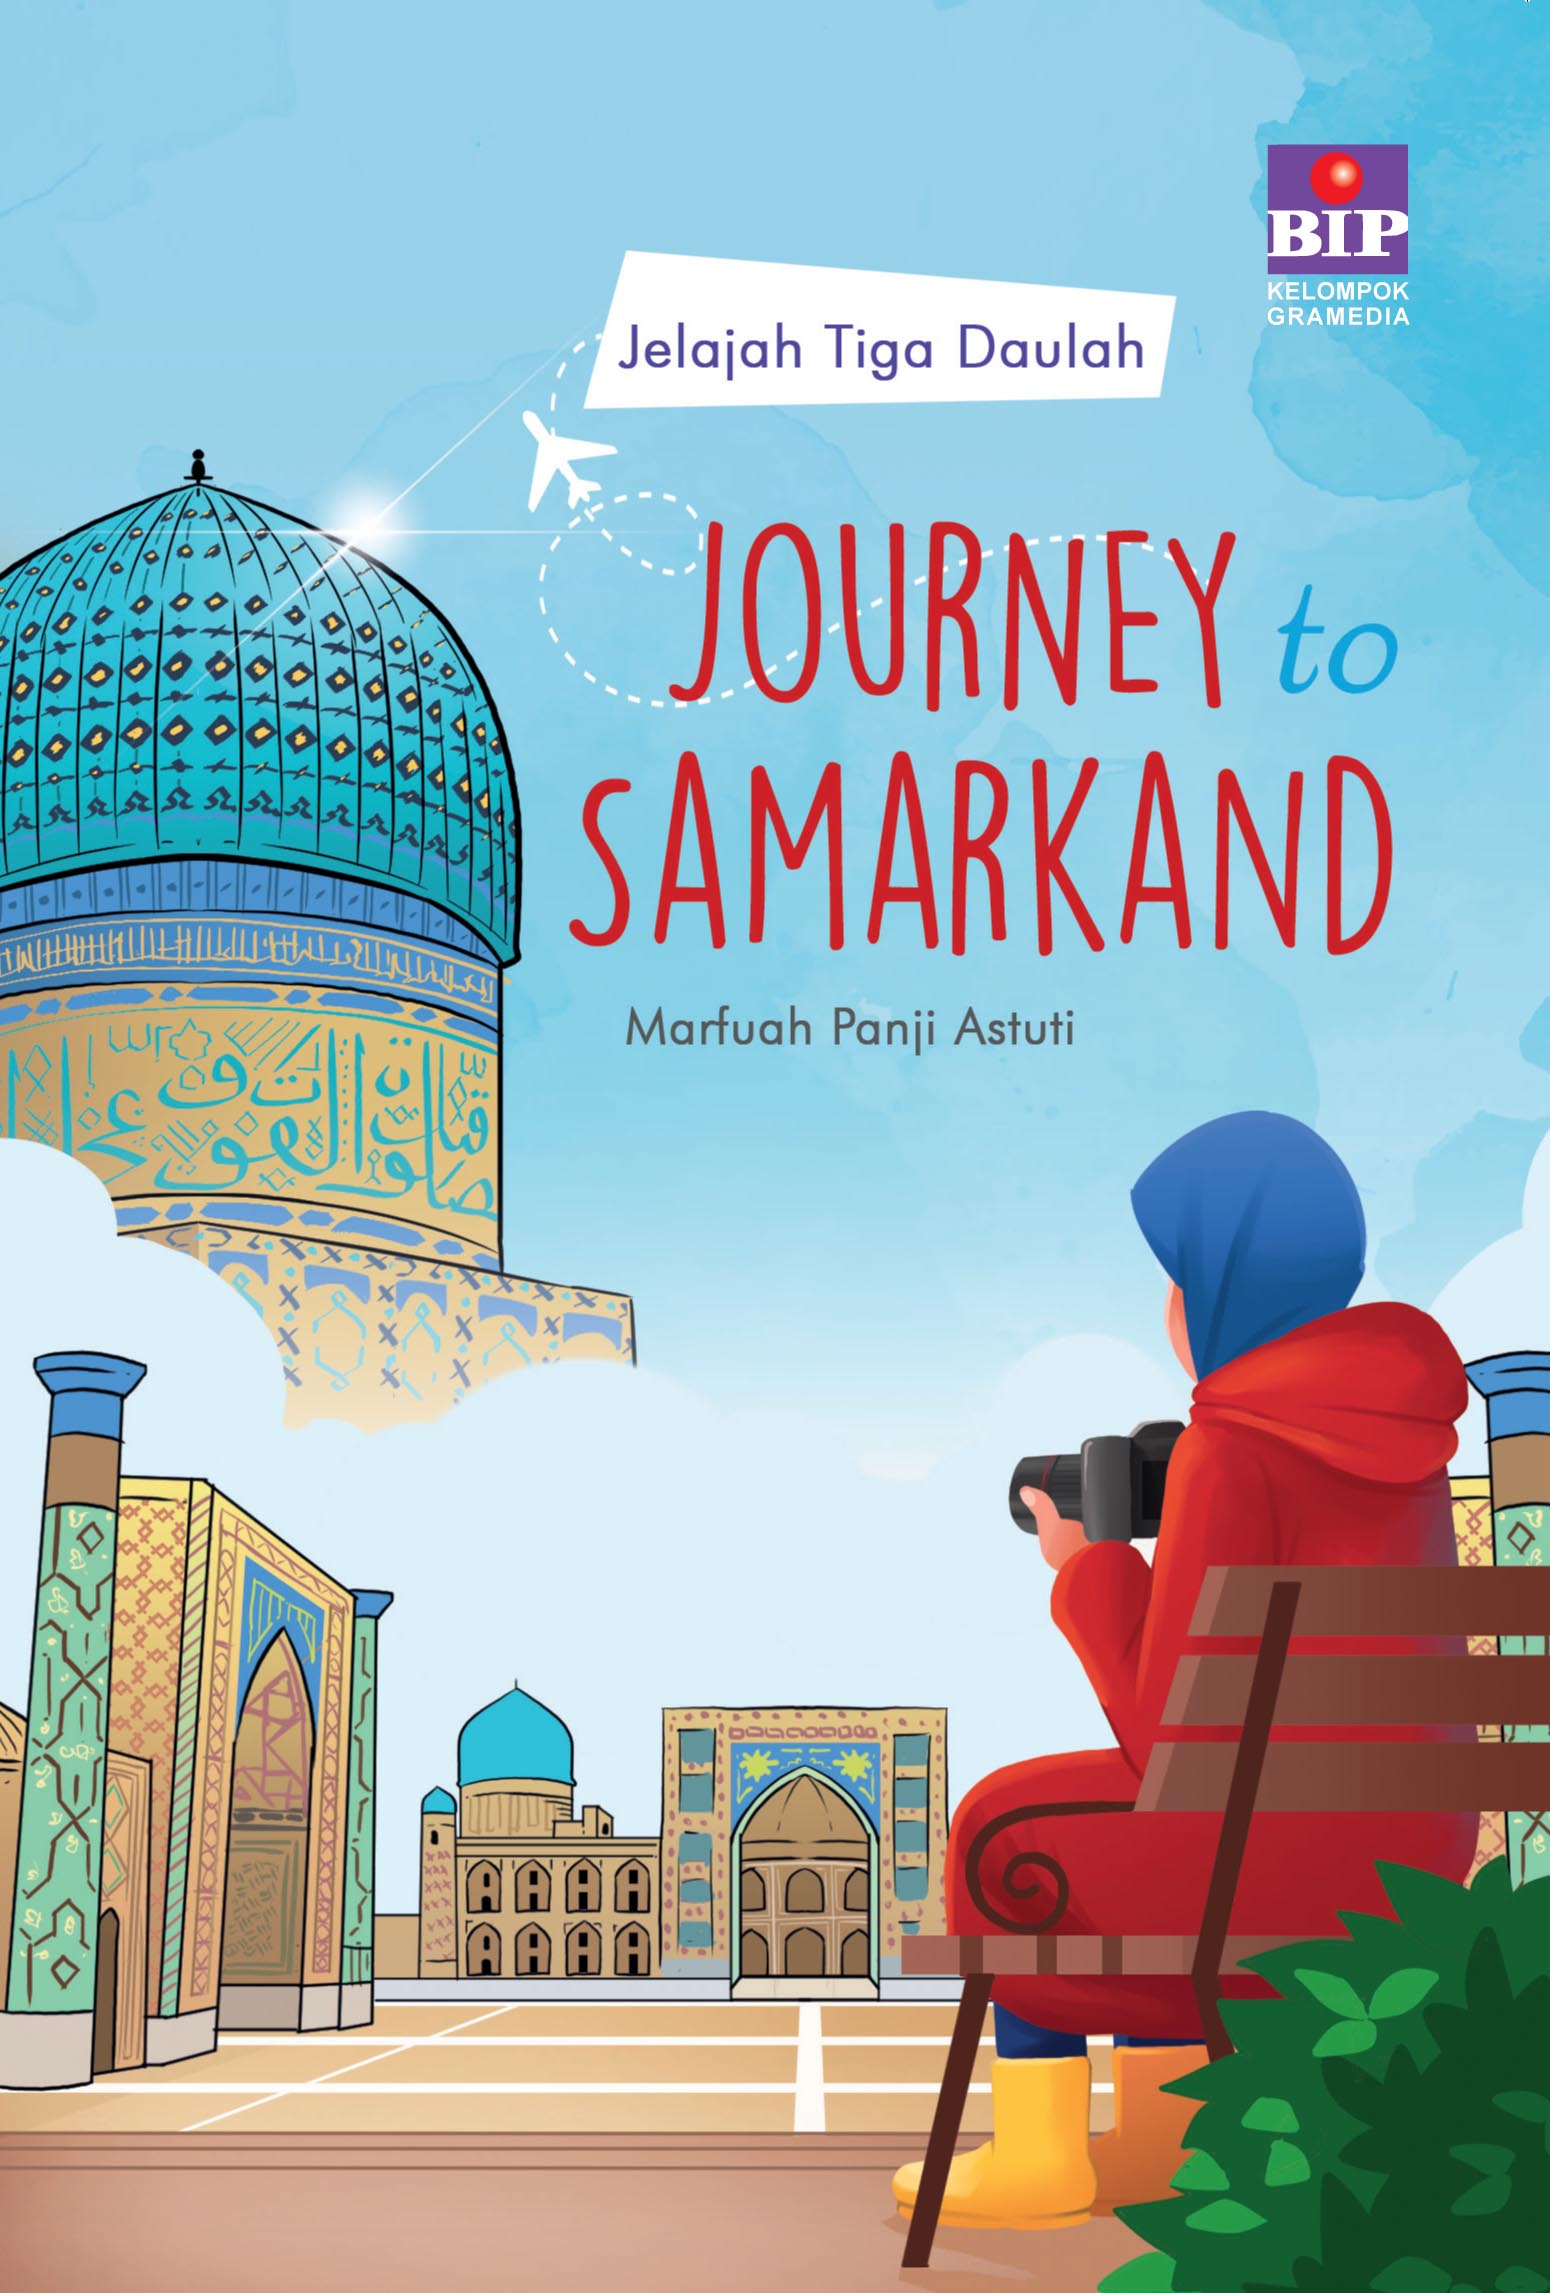 Jelajah tiga daulah :  journey to Samarkand